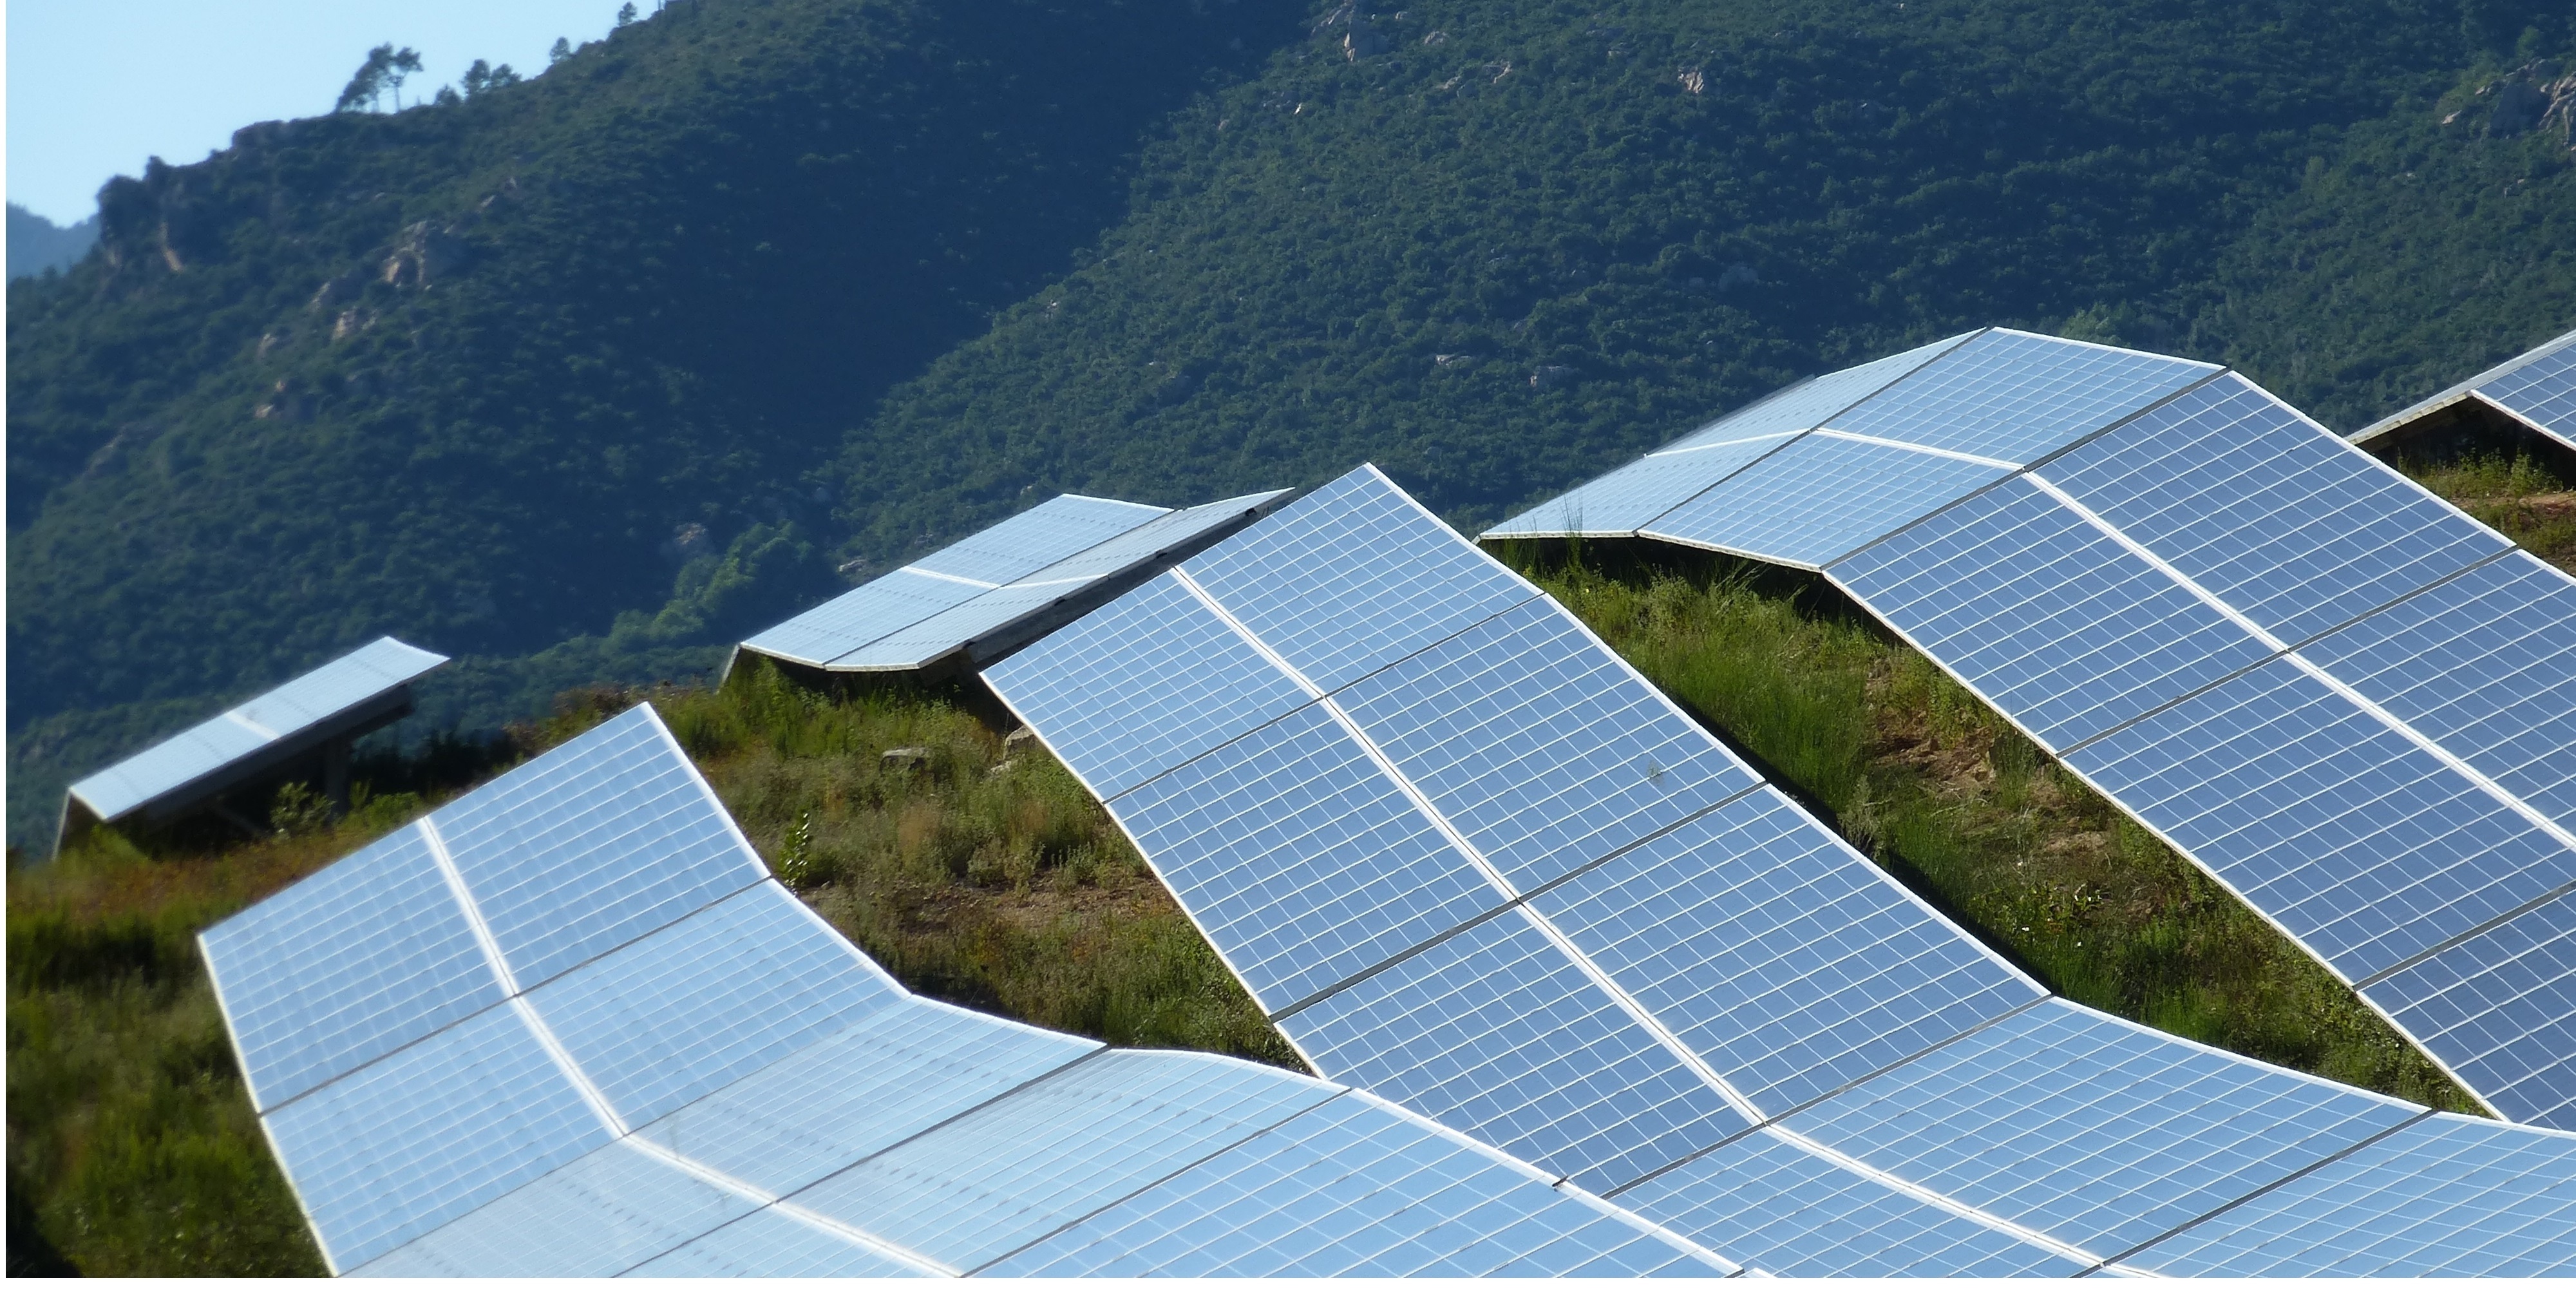 08.03.2013 - Ad-hoc-release: Second Closing for SolarKapital PV-plant in Corsica